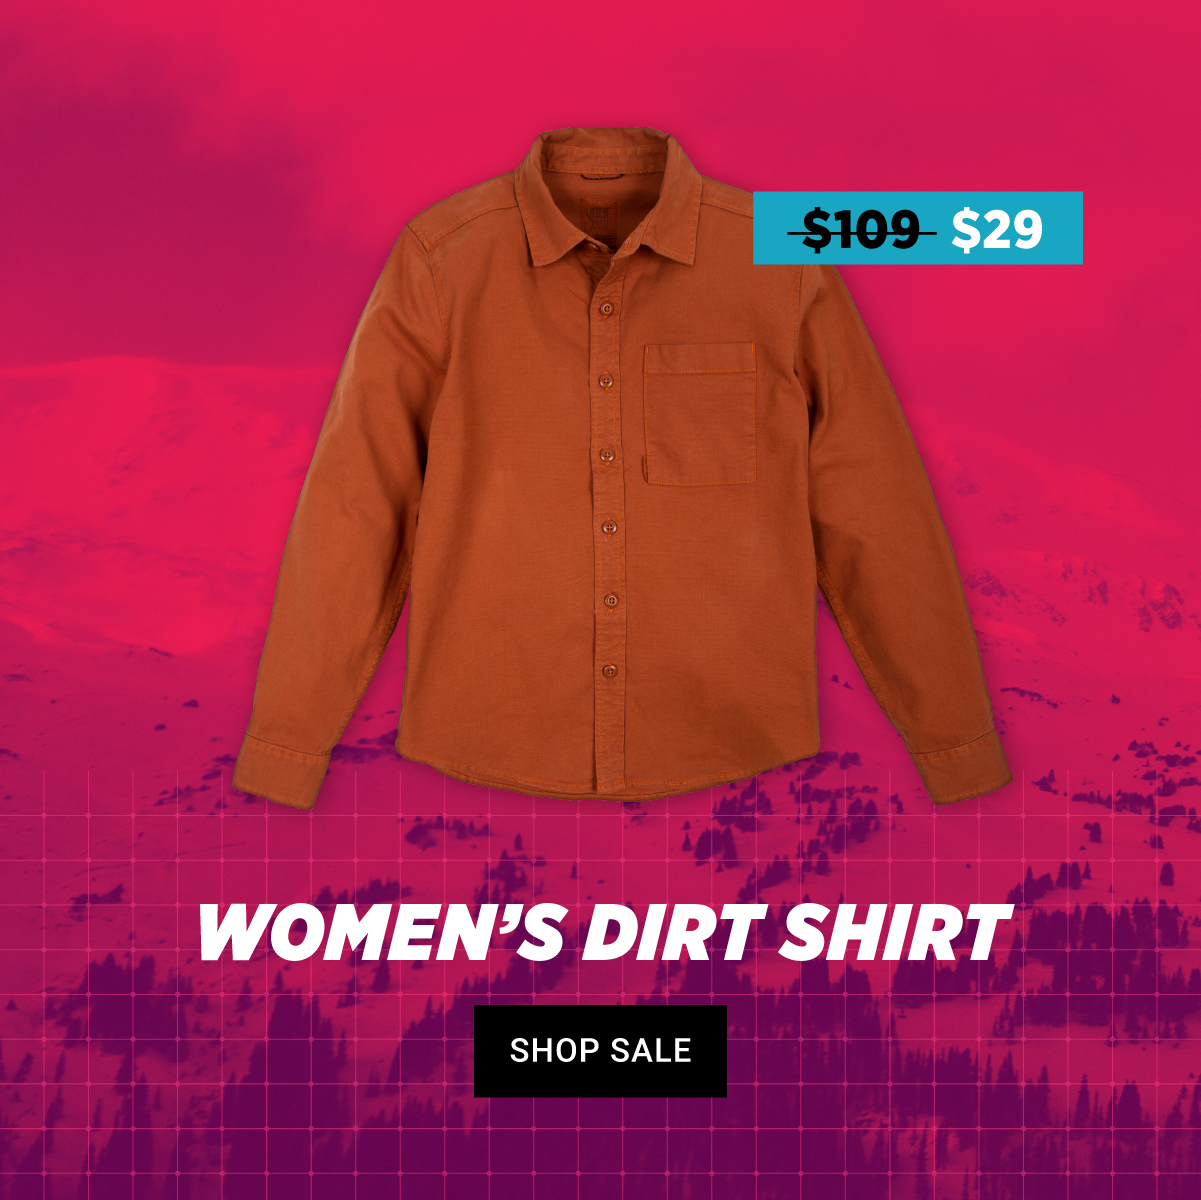 Women's Dirt Shirt - Up to 70% Off